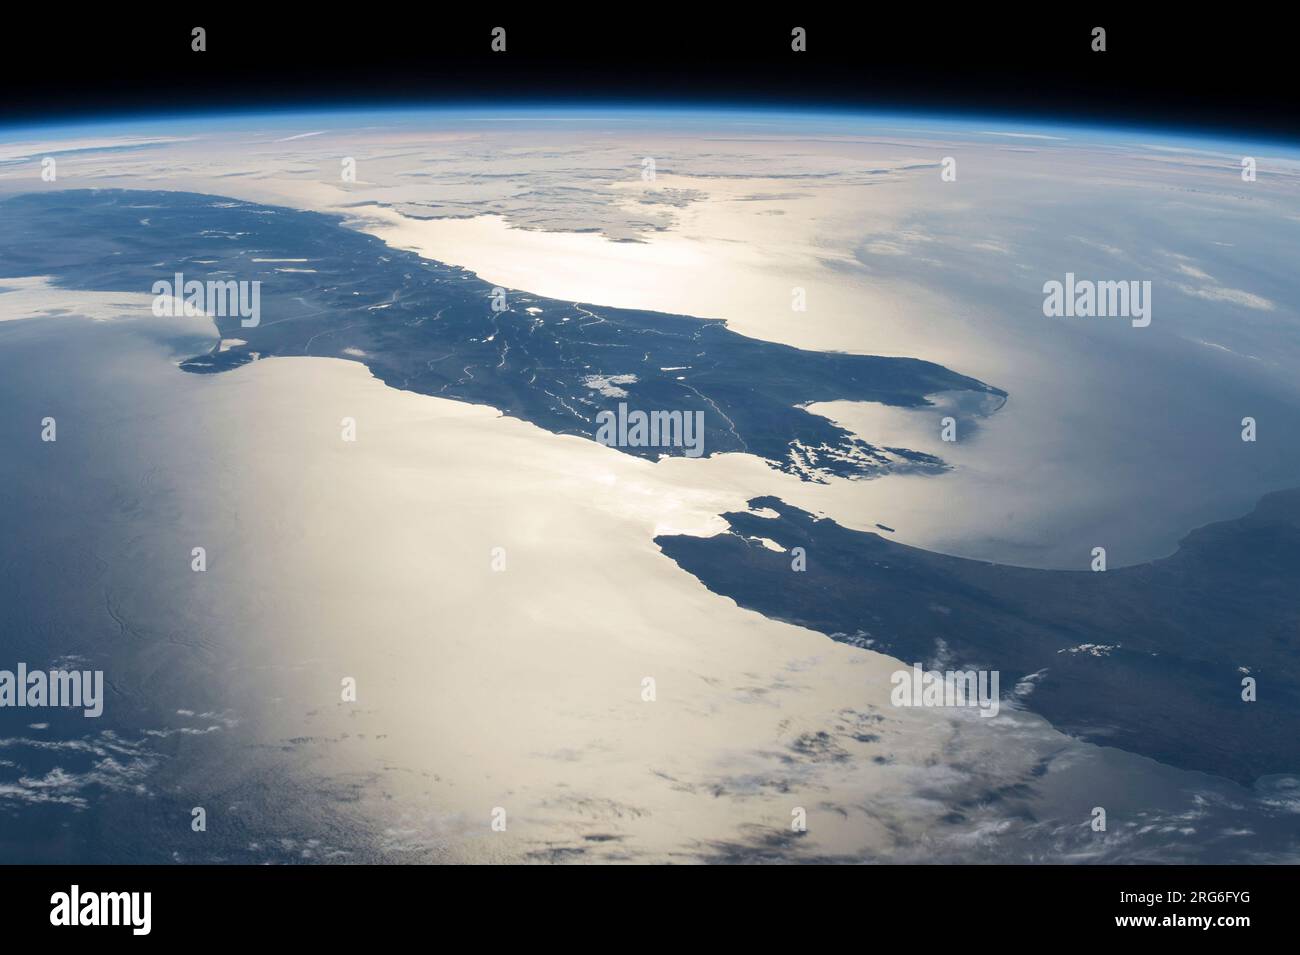 Panorama aus dem All mit Blick auf die Cook Strait, zwischen Neuseelands Nord- und Südinseln. Stockfoto